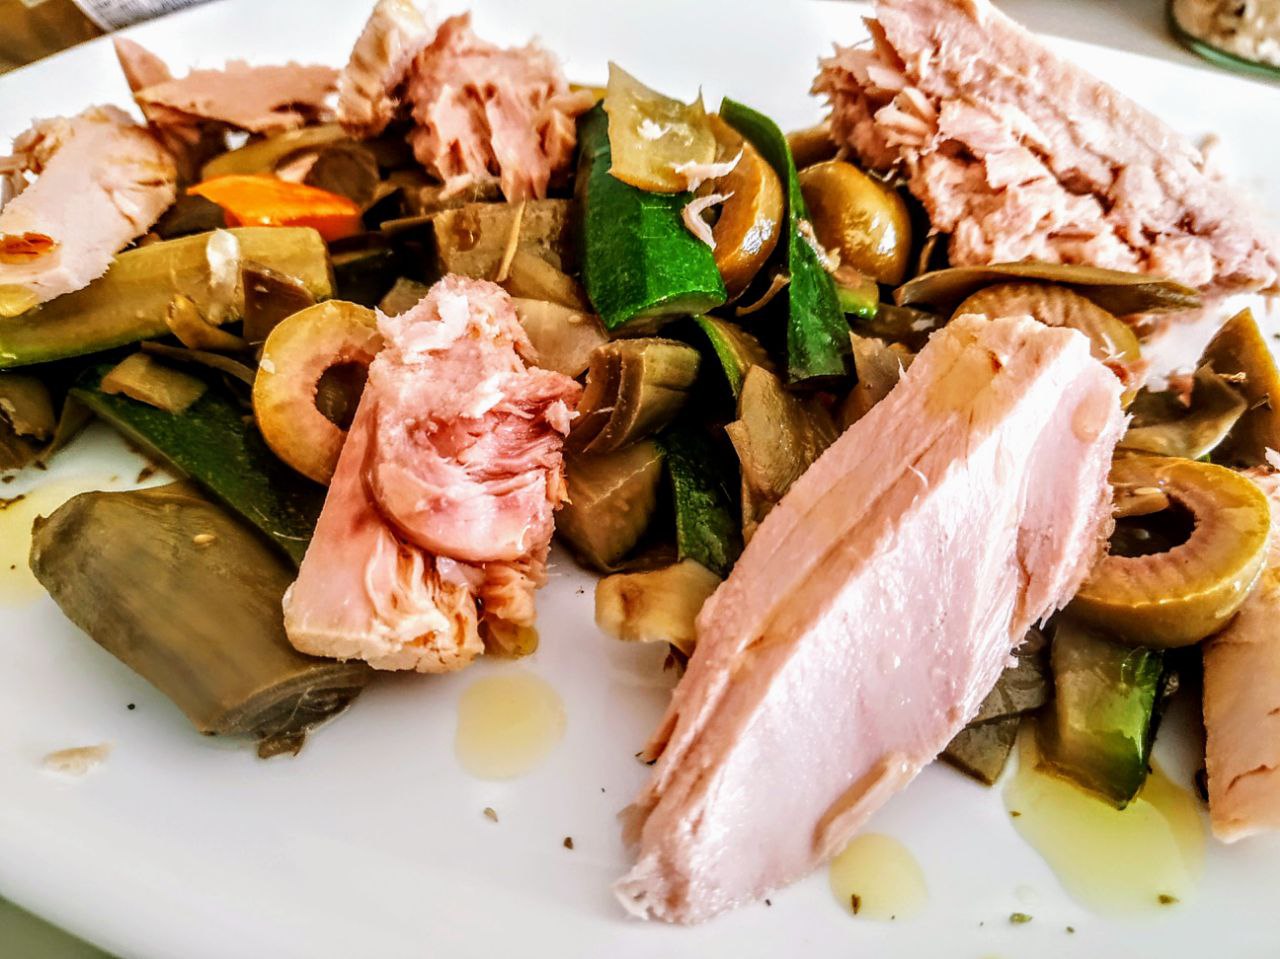 Ricette economiche leggere e semplici: padellata di zucchine e carciofi con acciughe olive e filetti di tonno al naturale